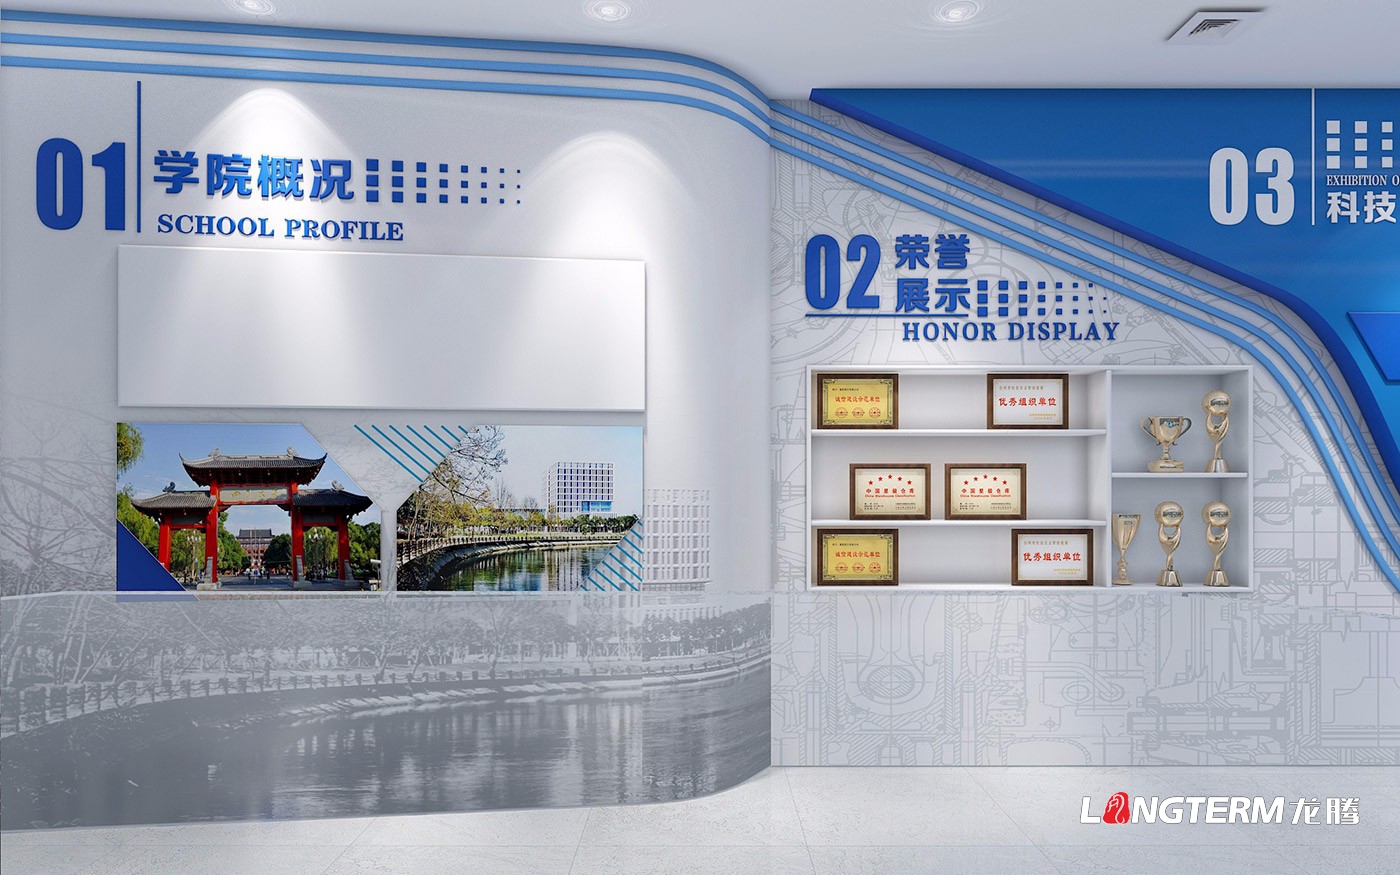 四川大学空天科学与工程学院结果展厅策划设计与施工制作